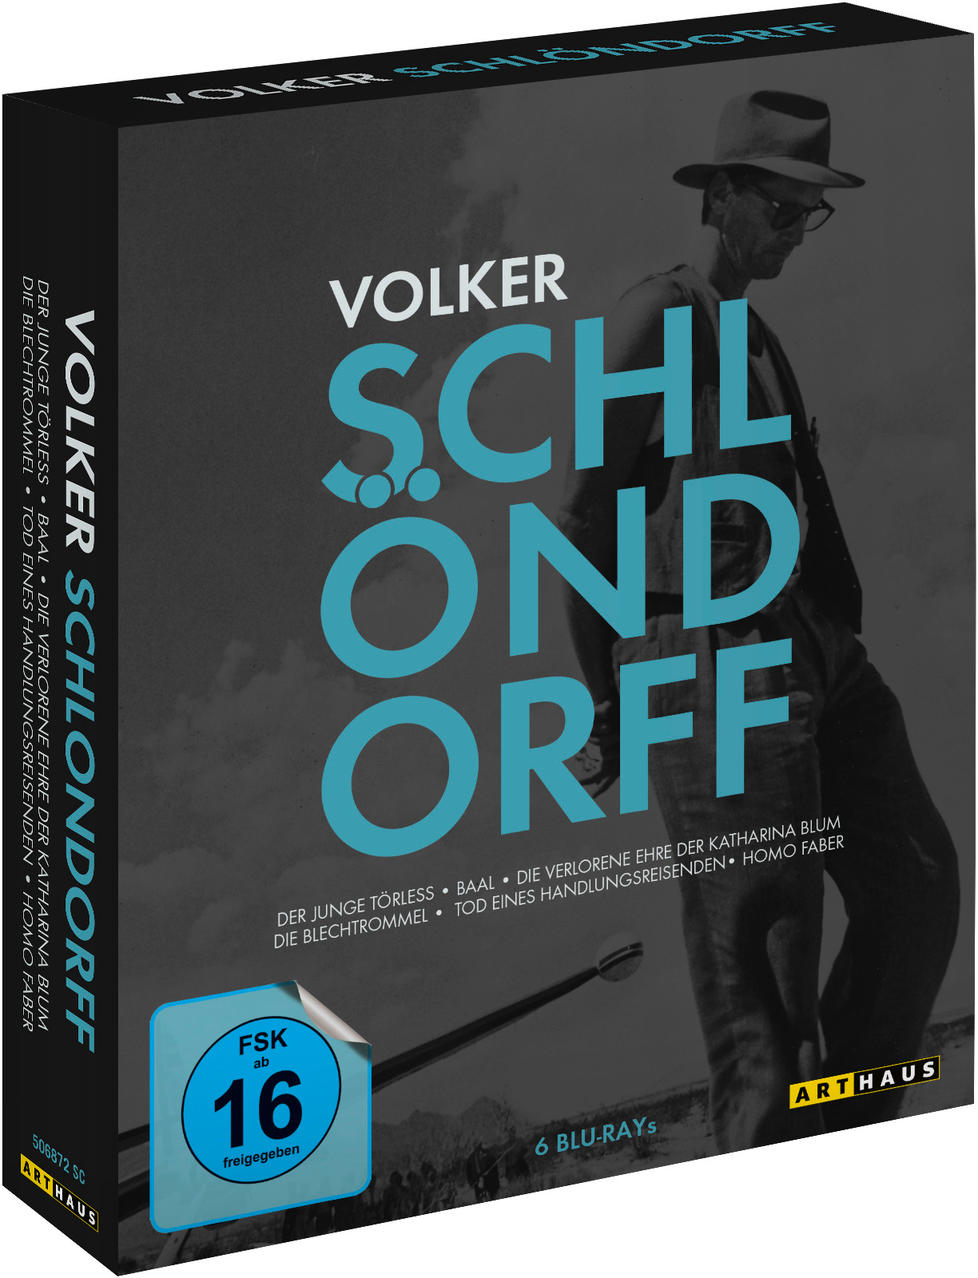 BEST VOLKER Blu-ray OF SCHLÖNDORFF